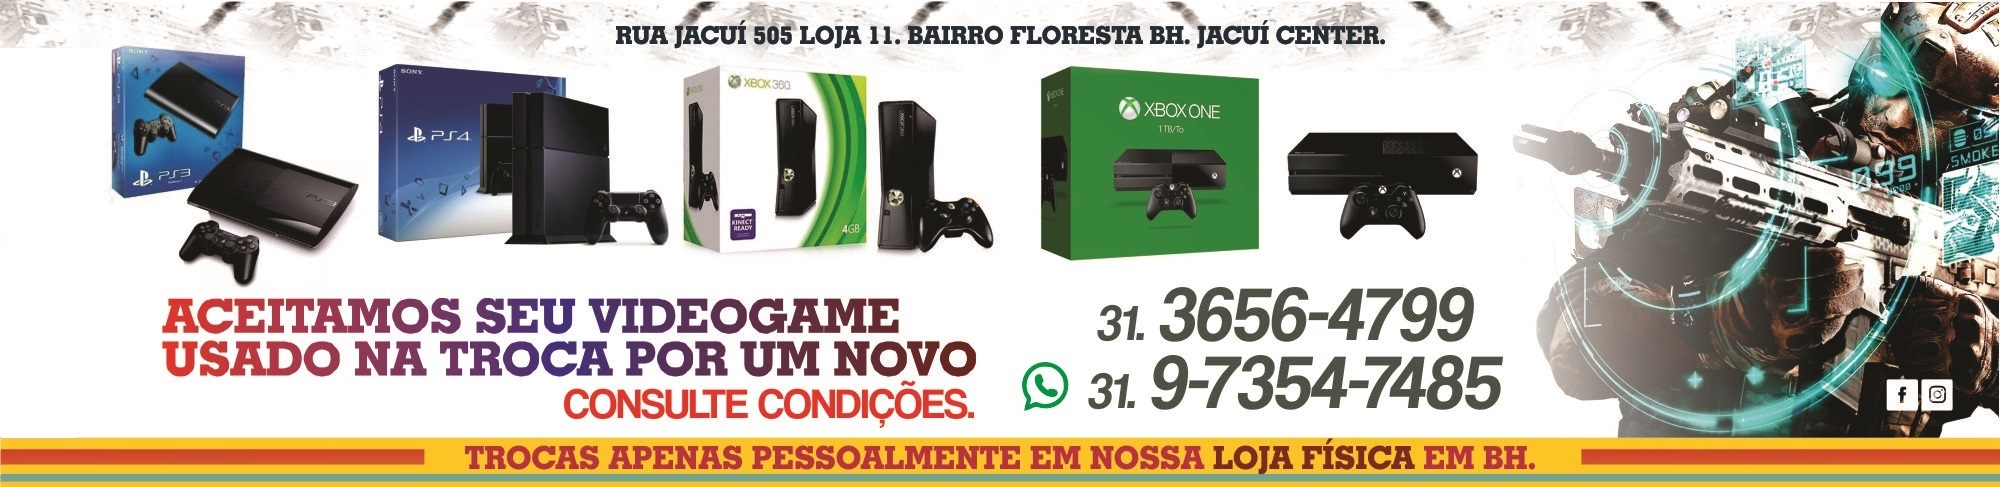 BH GAMES - A Mais Completa Loja de Games de Belo Horizonte - Left